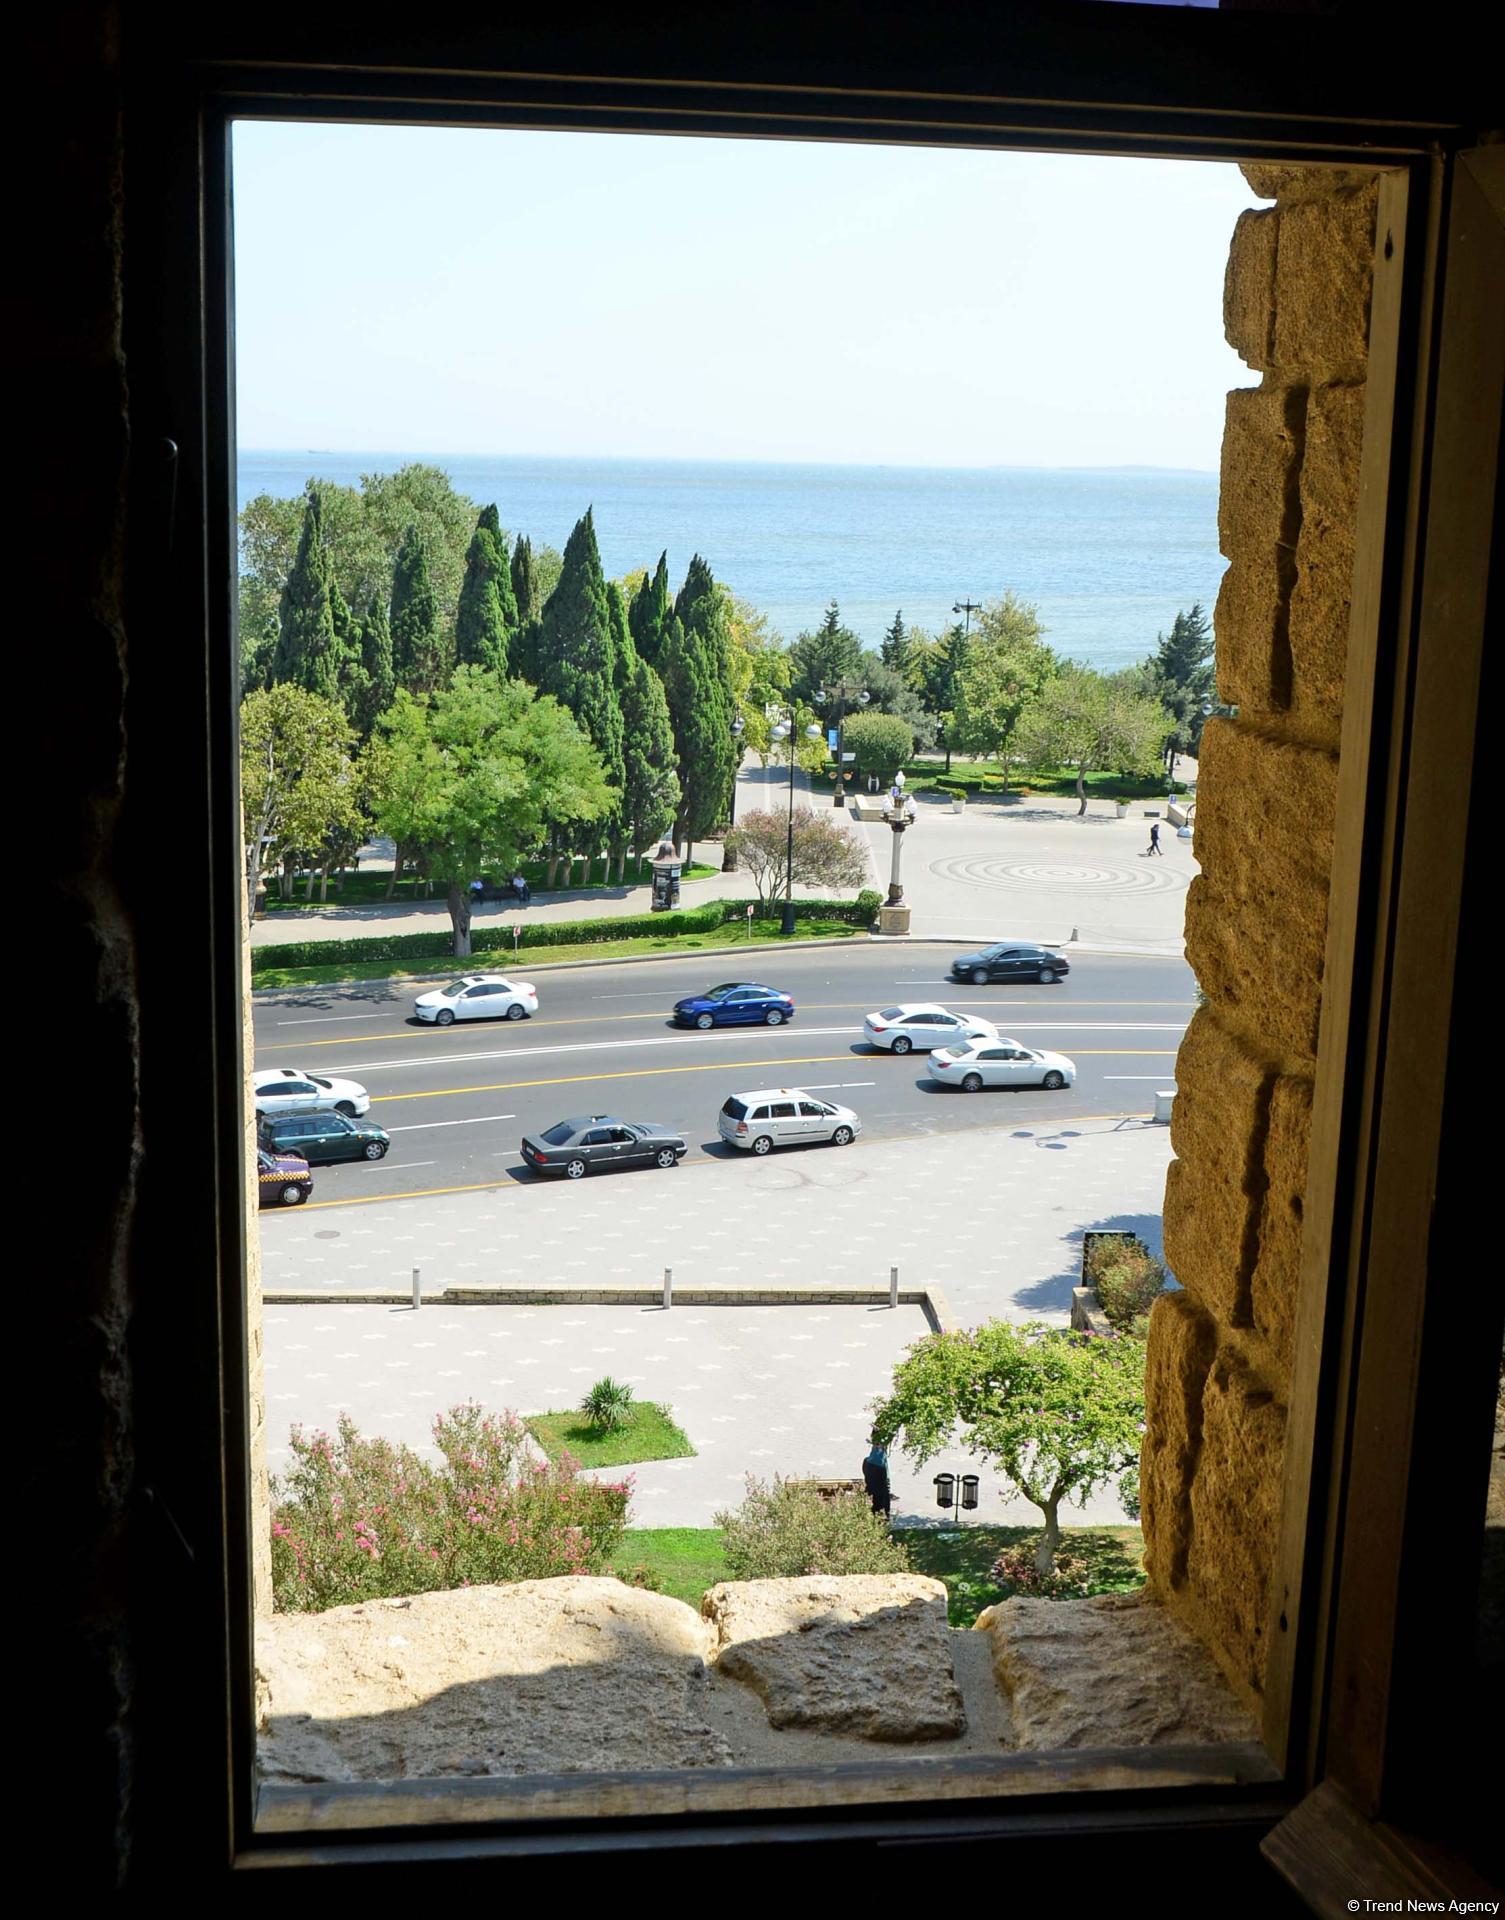 Загадочная башня Баку (Фоторепортаж)